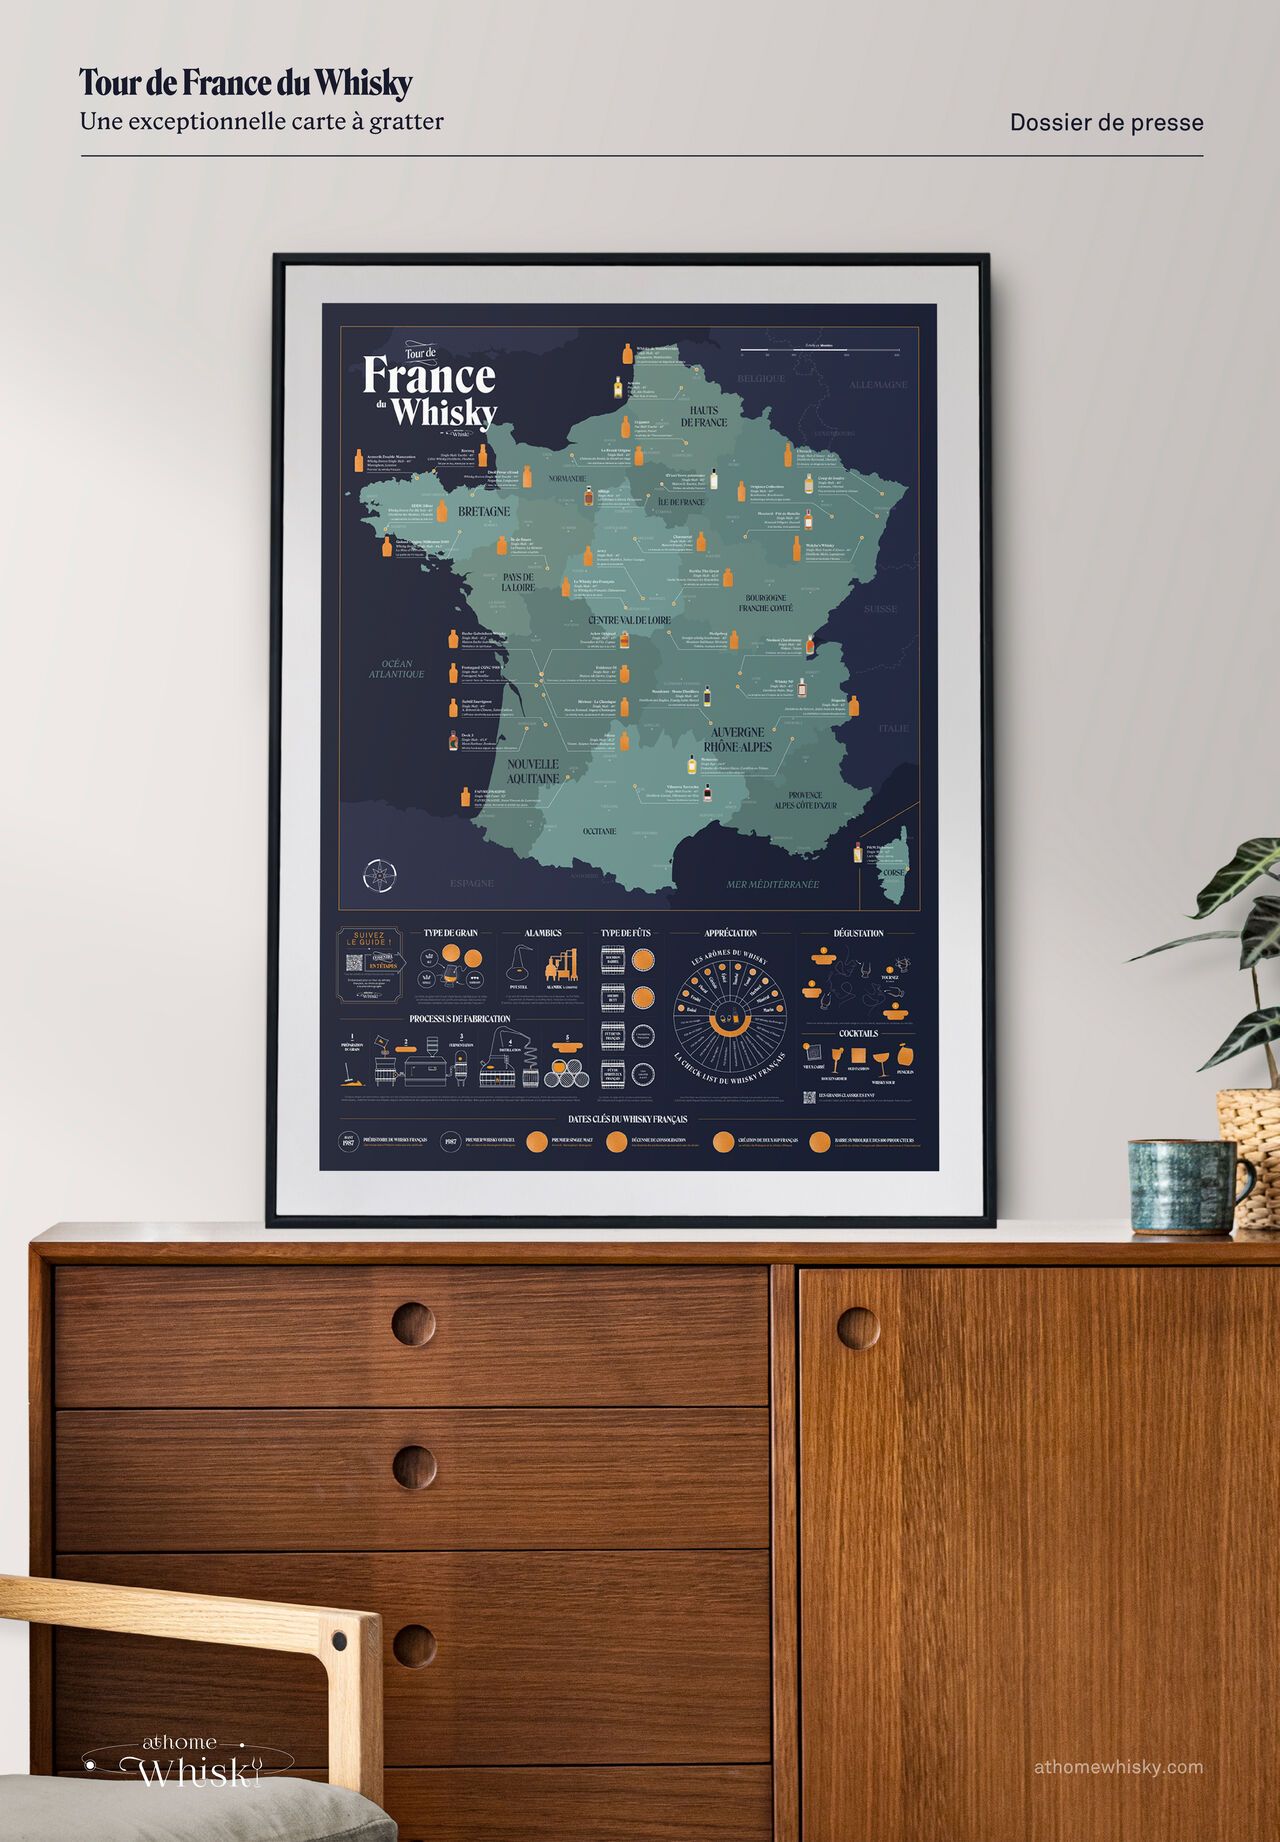 La carte à gratter du Tour de France du Whisky